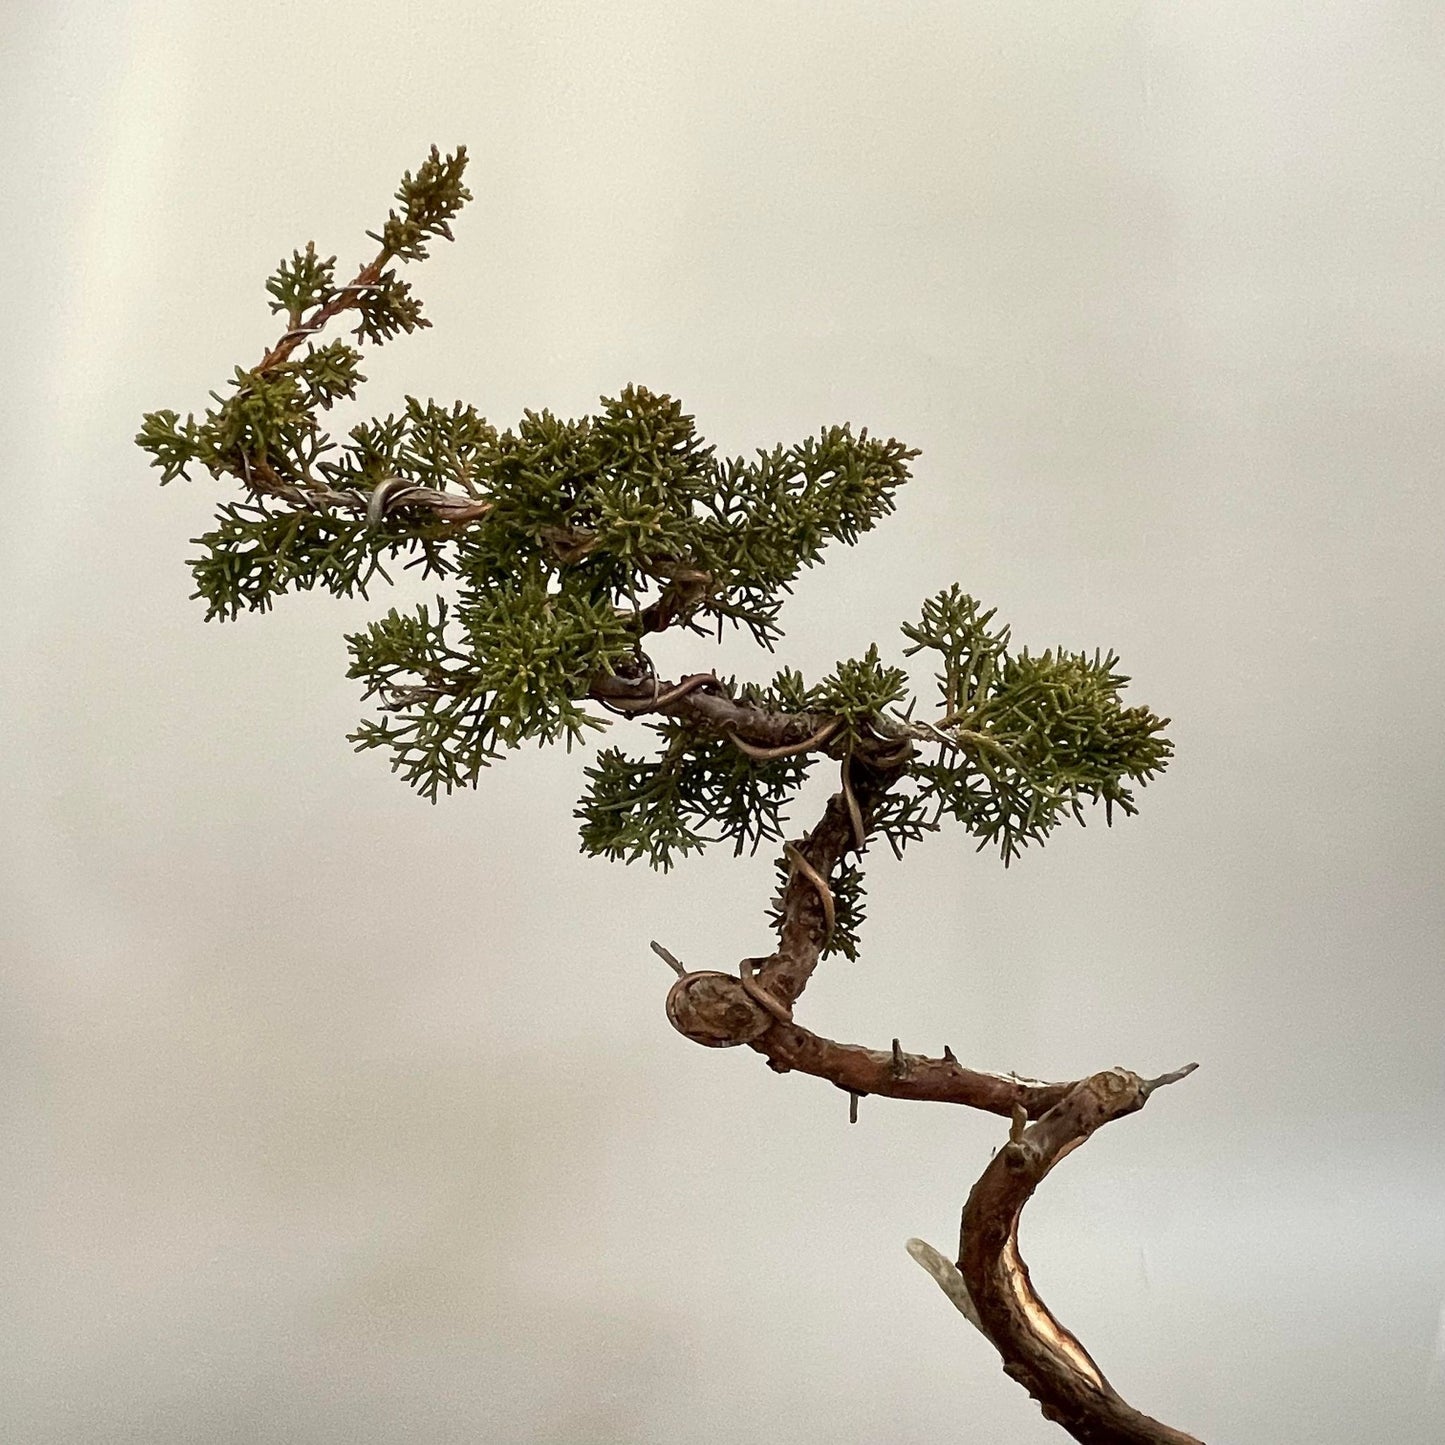 Tsuyama Hinoi cypress shohin bonsai